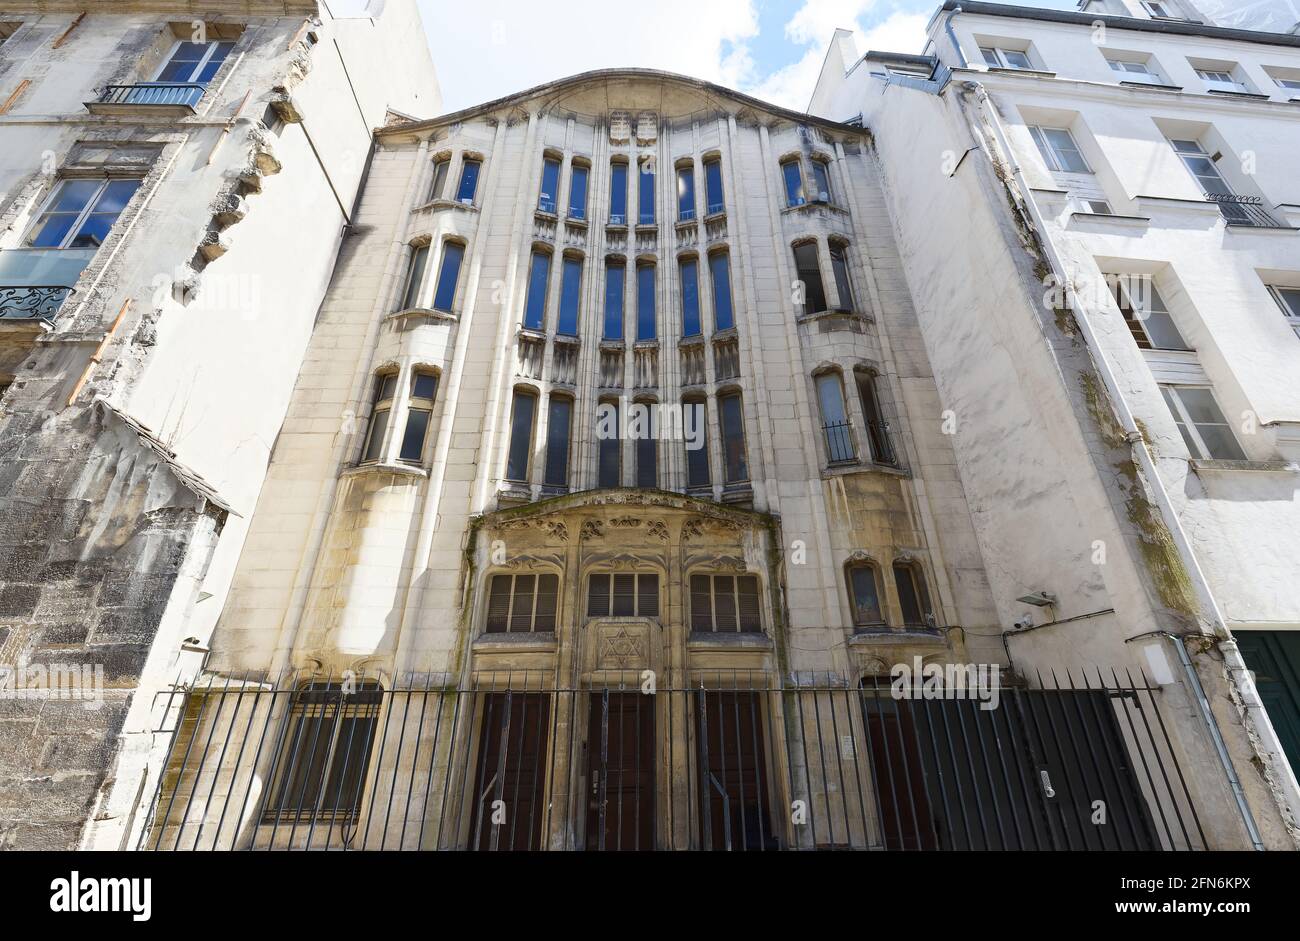 La synagogue de la rue Pavee située au centre du quartier juif du Marais, elle a été construite dans le style Art nouveau en 1913. Paris. Banque D'Images